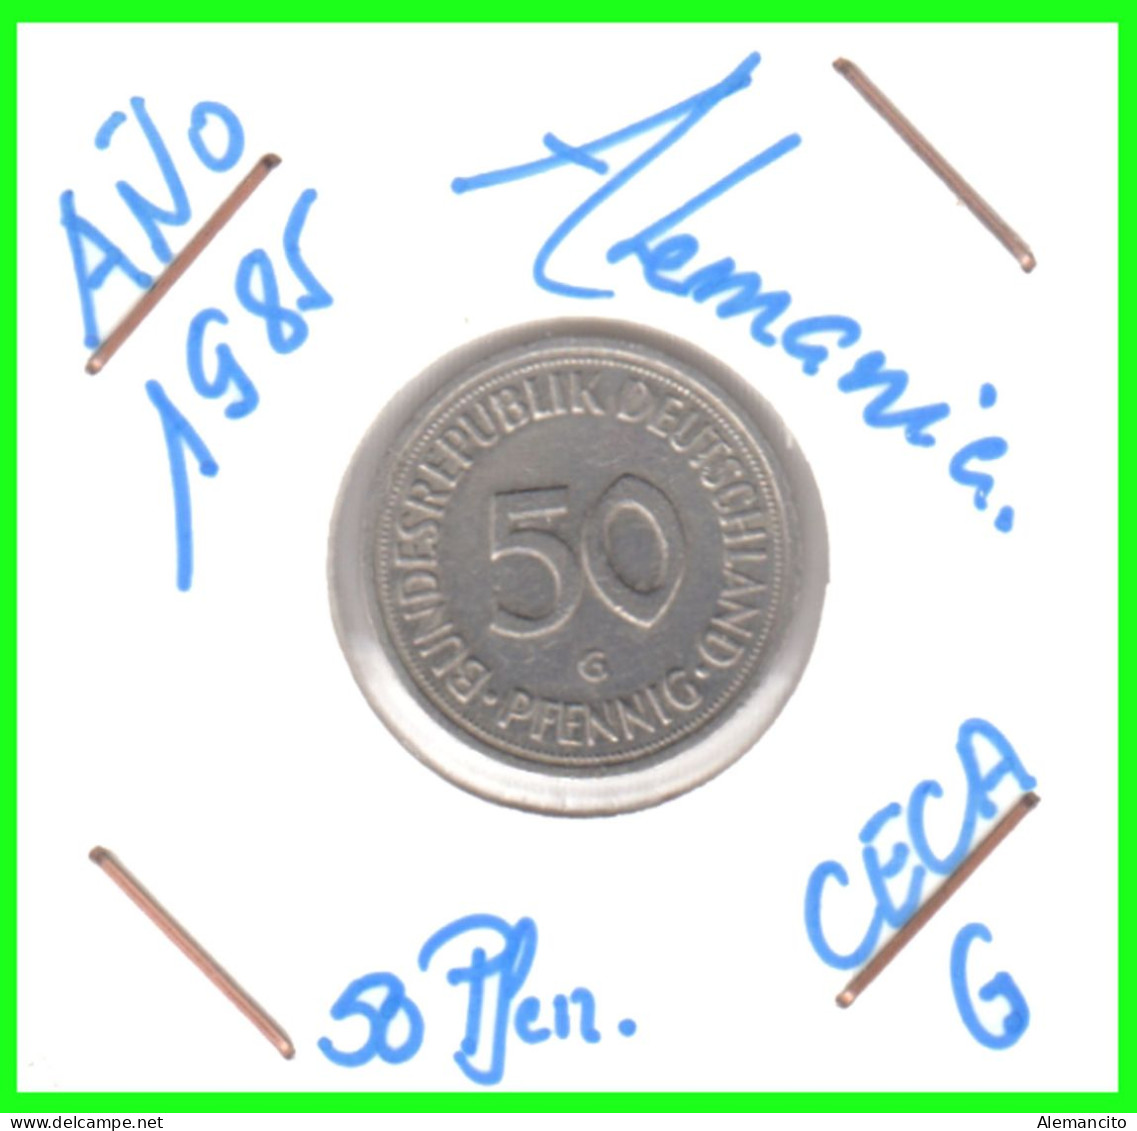 ALEMANIA - DEUTSCHLAND - GERMANY-MONEDA DE LA REPUBLICA FEDERAL DE ALEMIANIA DE 50 Pfn .DEL AÑO 1985 CECA - G - KARLRUHE - 50 Pfennig